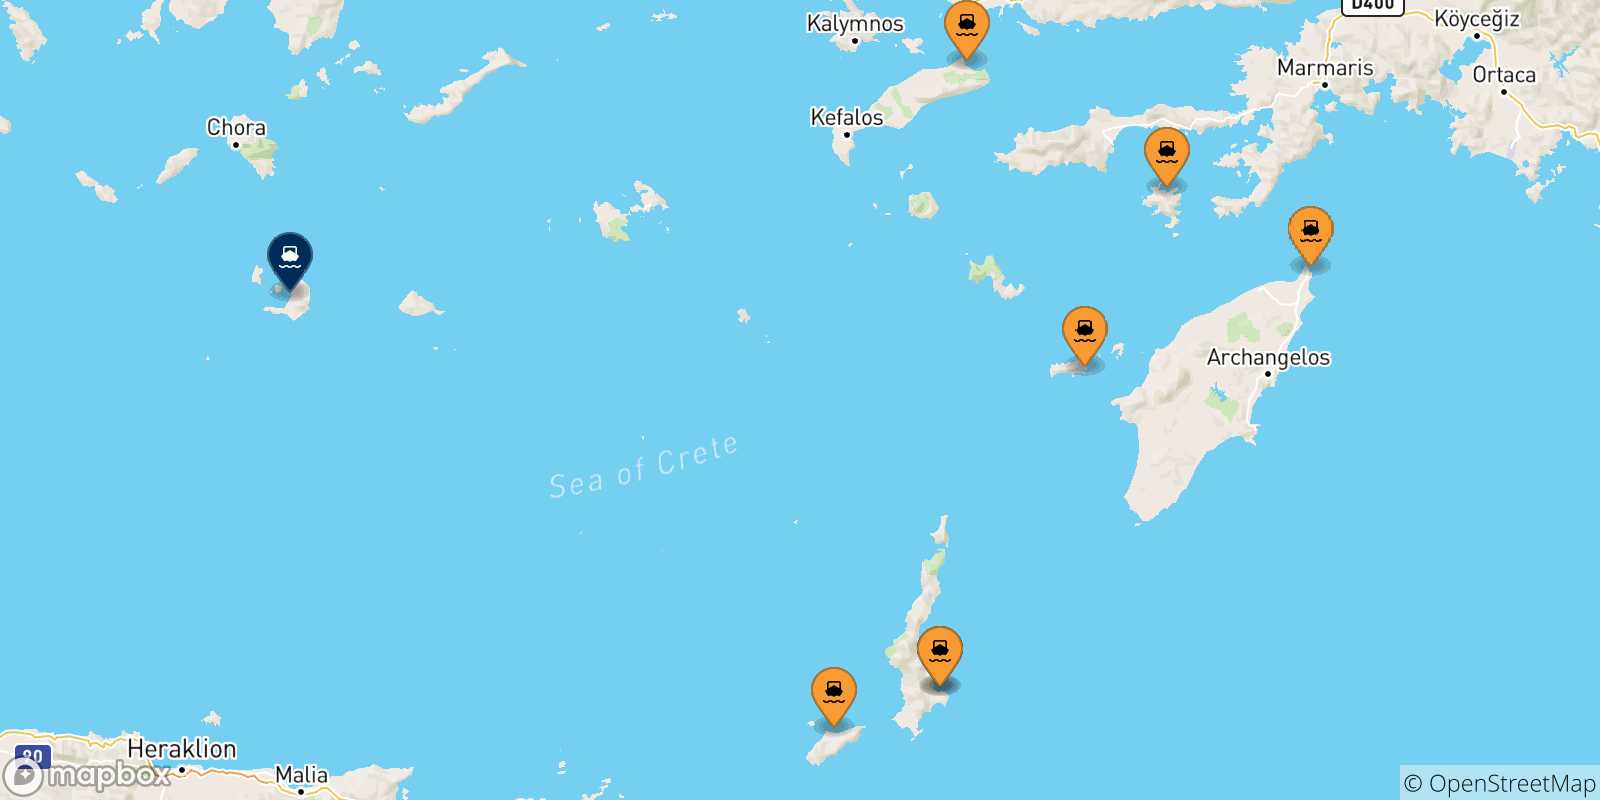 Mappa delle possibili rotte tra le Isole Dodecaneso e Santorini